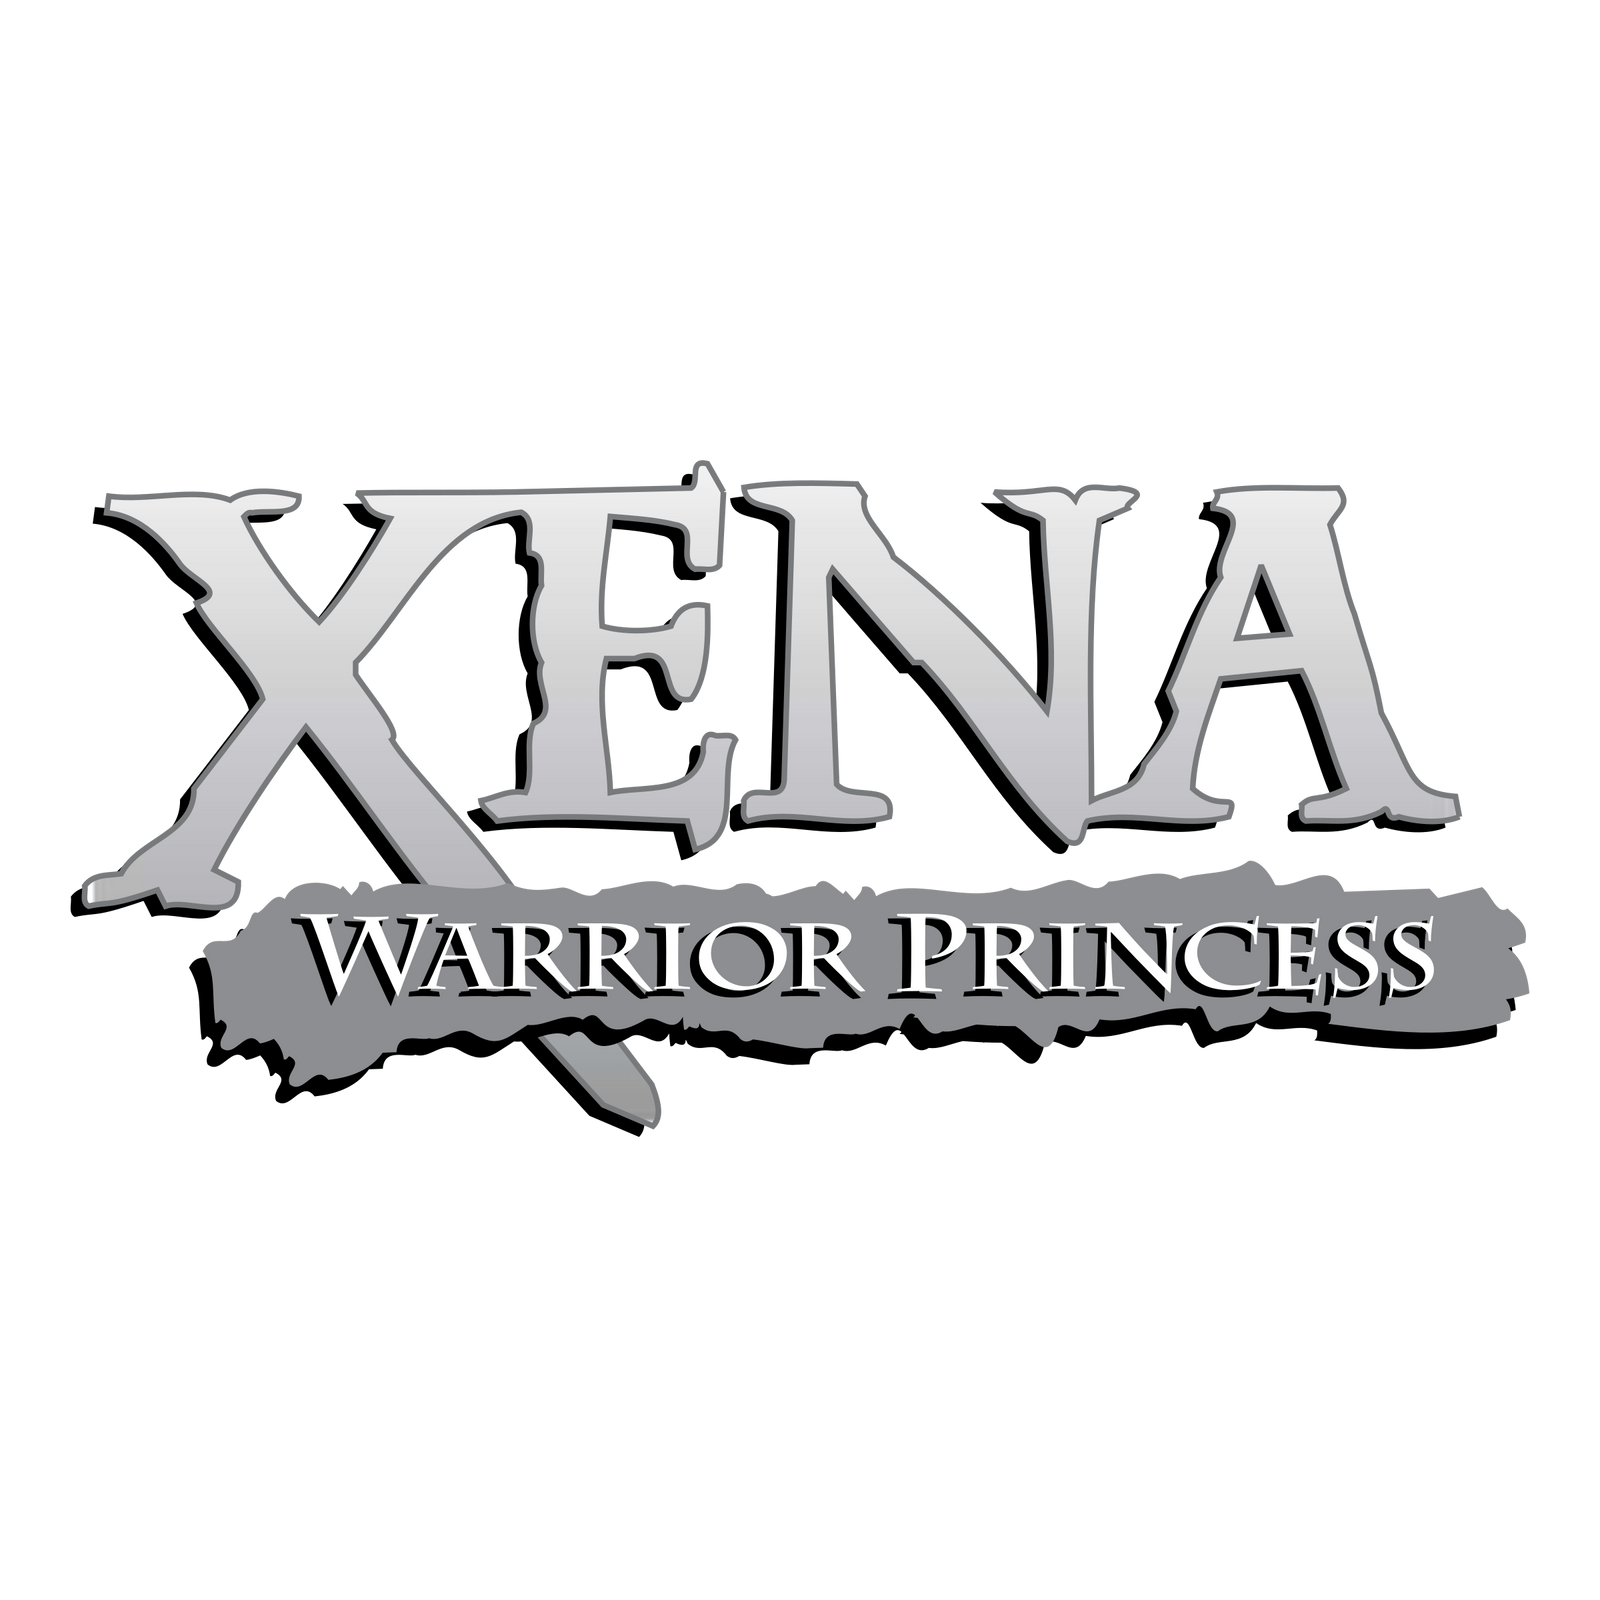 Xena Warrior Princess logo.